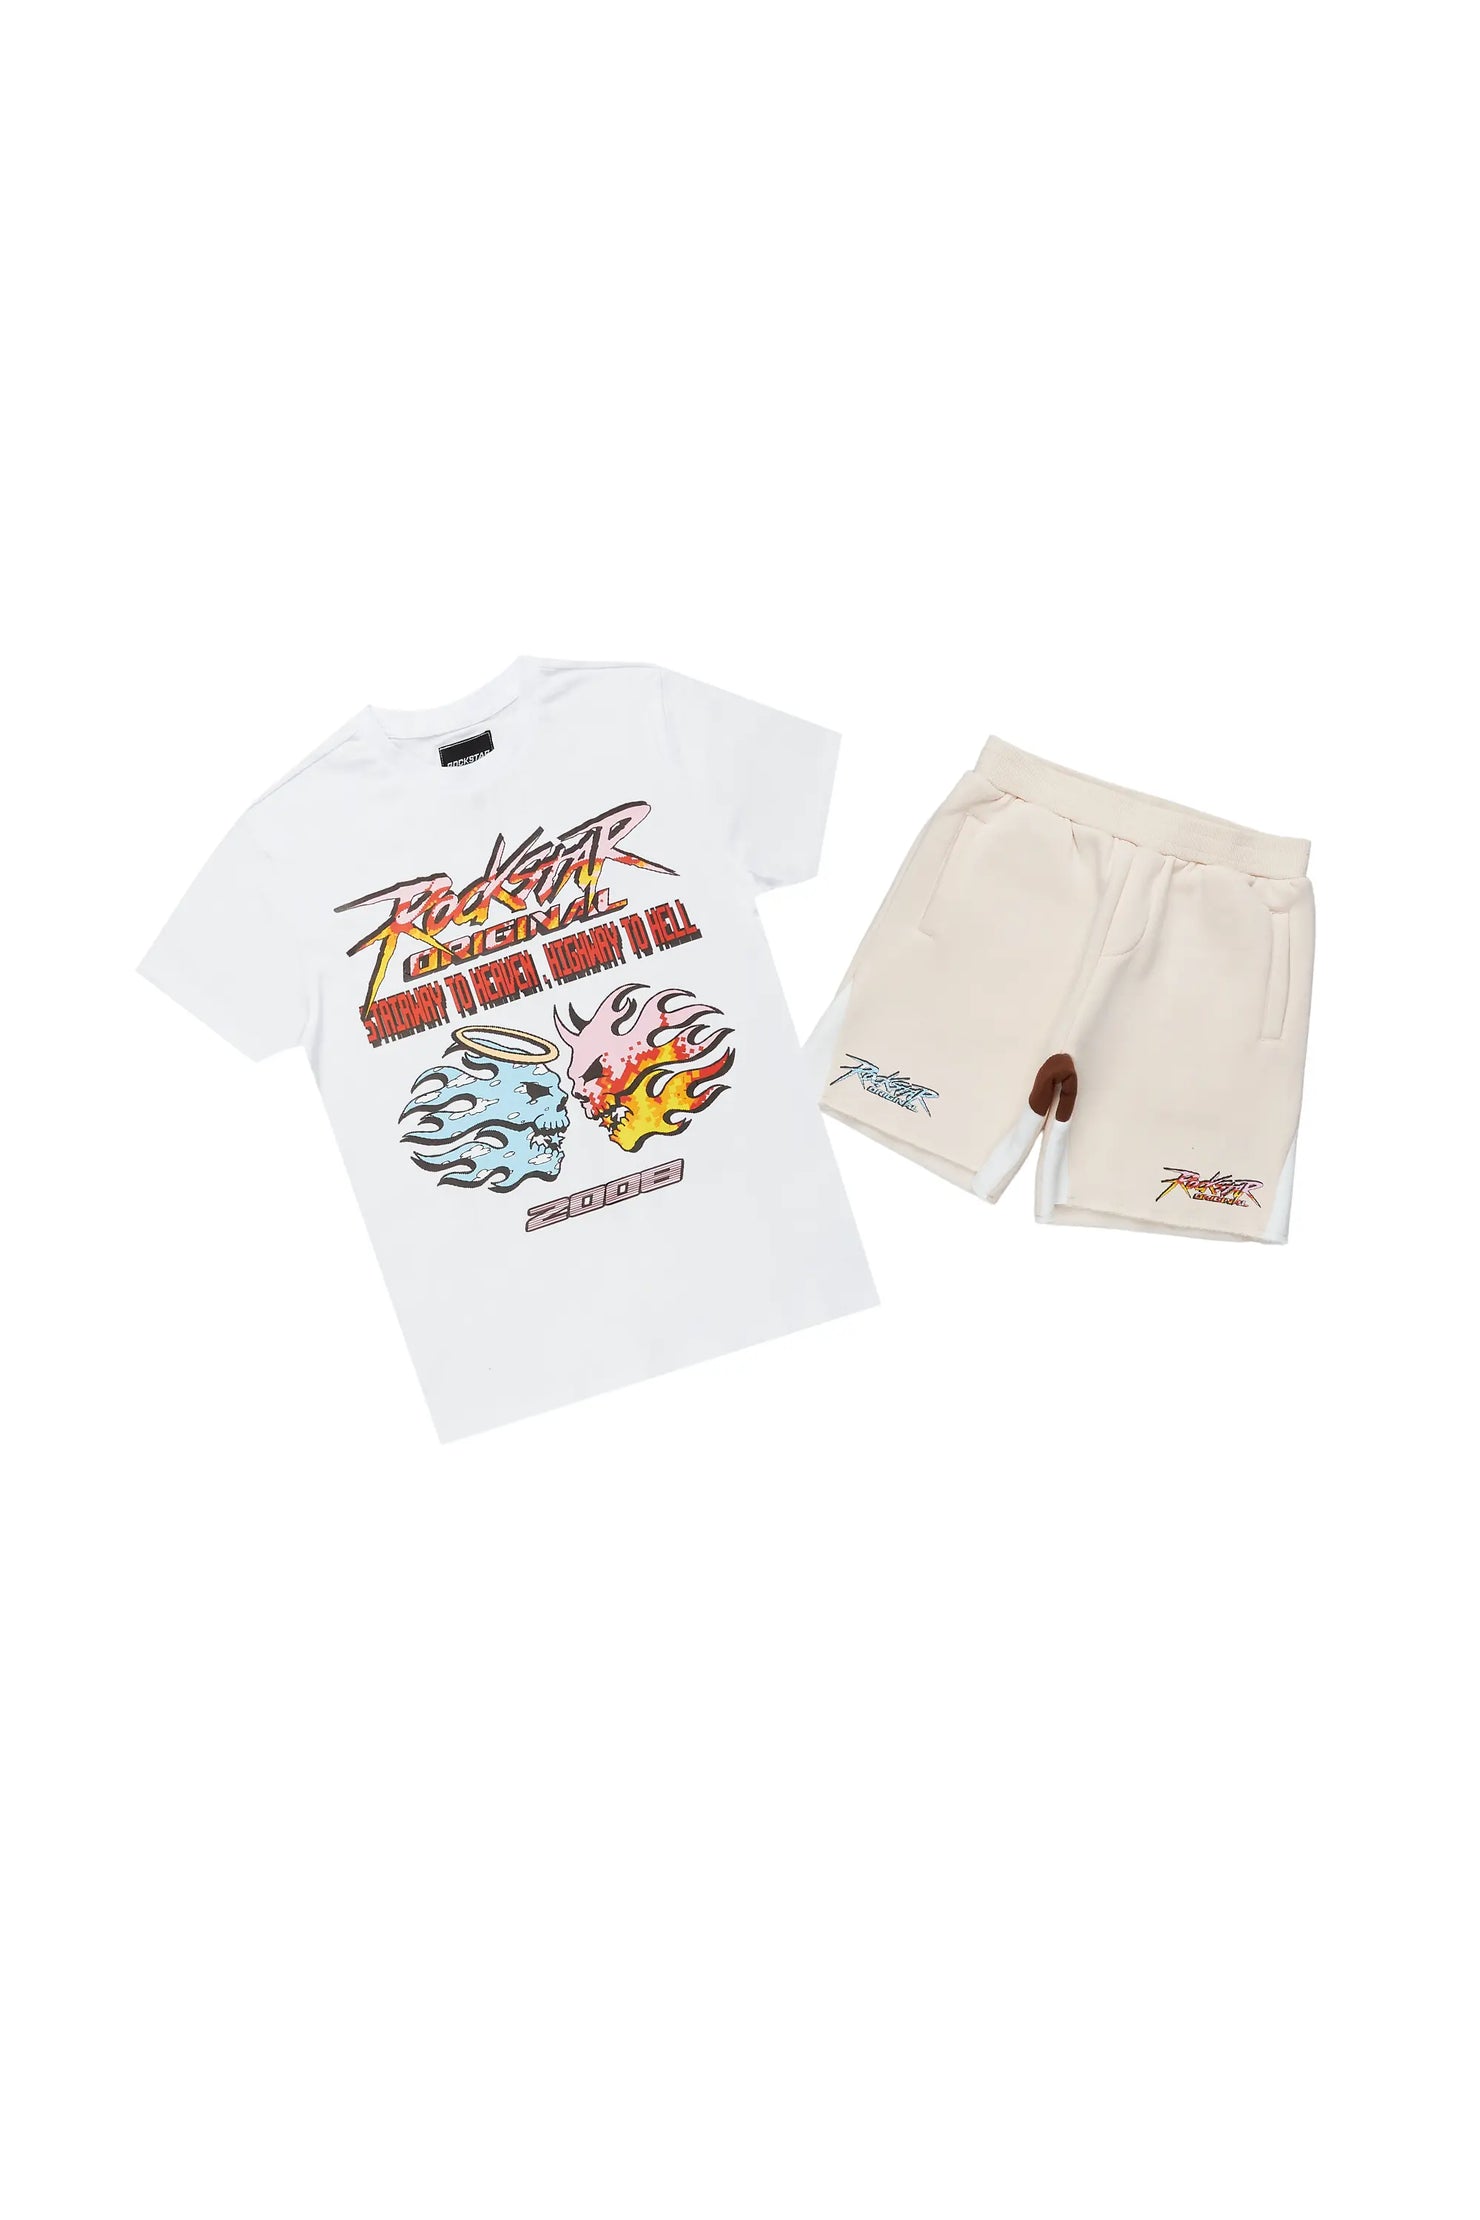 Boys Sky White/Beige T-Shirt Short Set